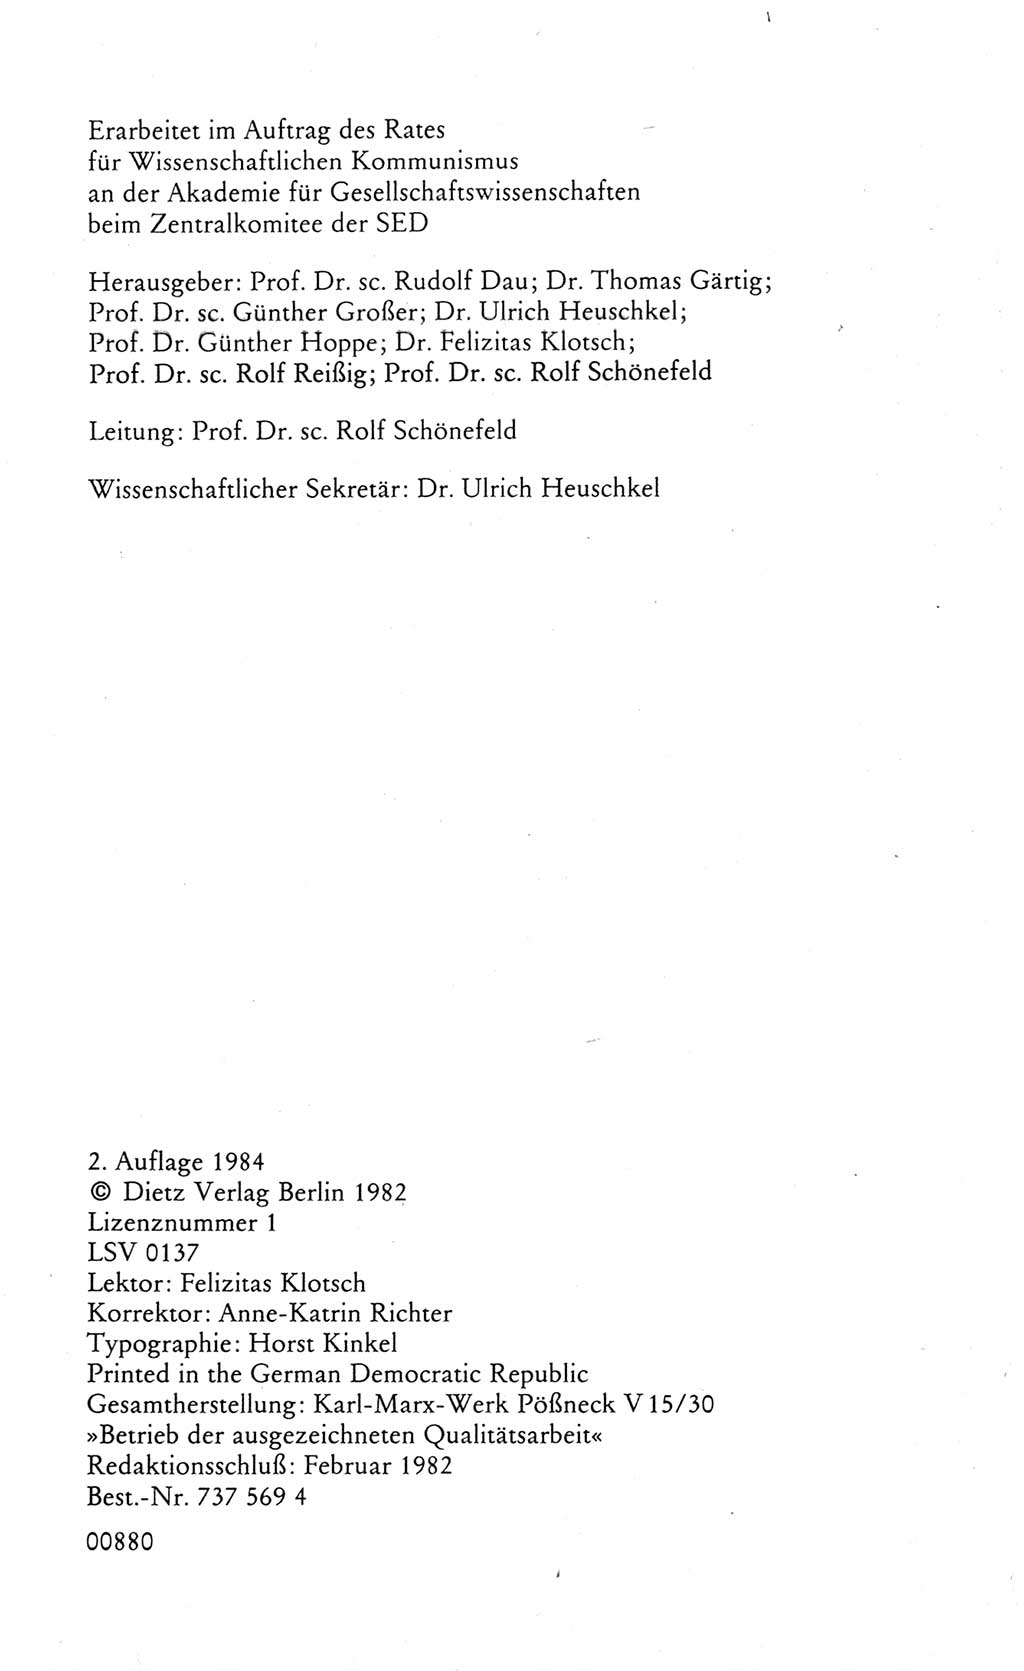 Wörterbuch des wissenschaftlichen Kommunismus [Deutsche Demokratische Republik (DDR)] 1984, Seite 4 (Wb. wiss. Komm. DDR 1984, S. 4)